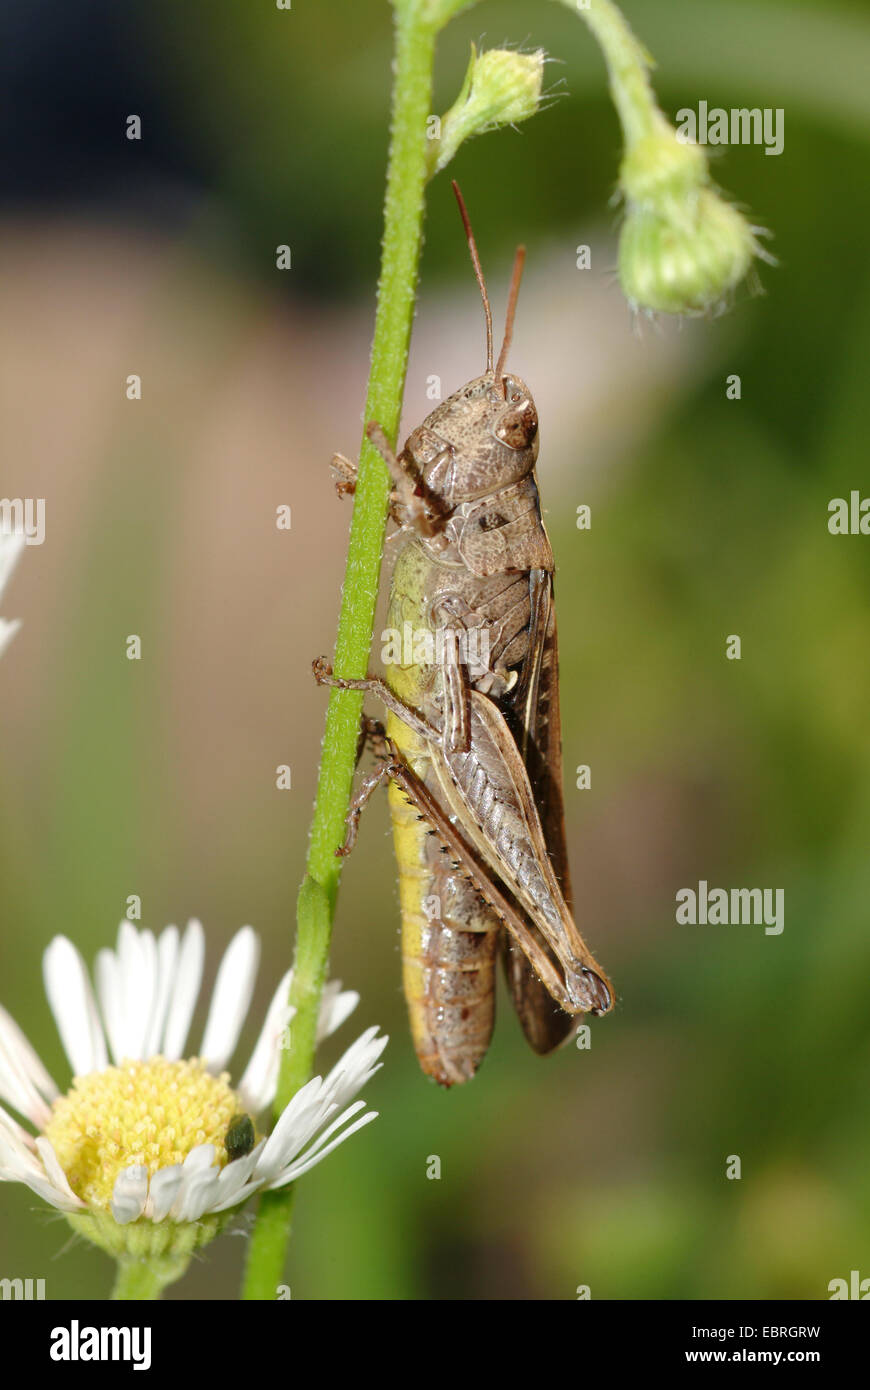 Bow-winged grasshopper (Chorthippus biguttulus), assis à un composite, Allemagne Banque D'Images